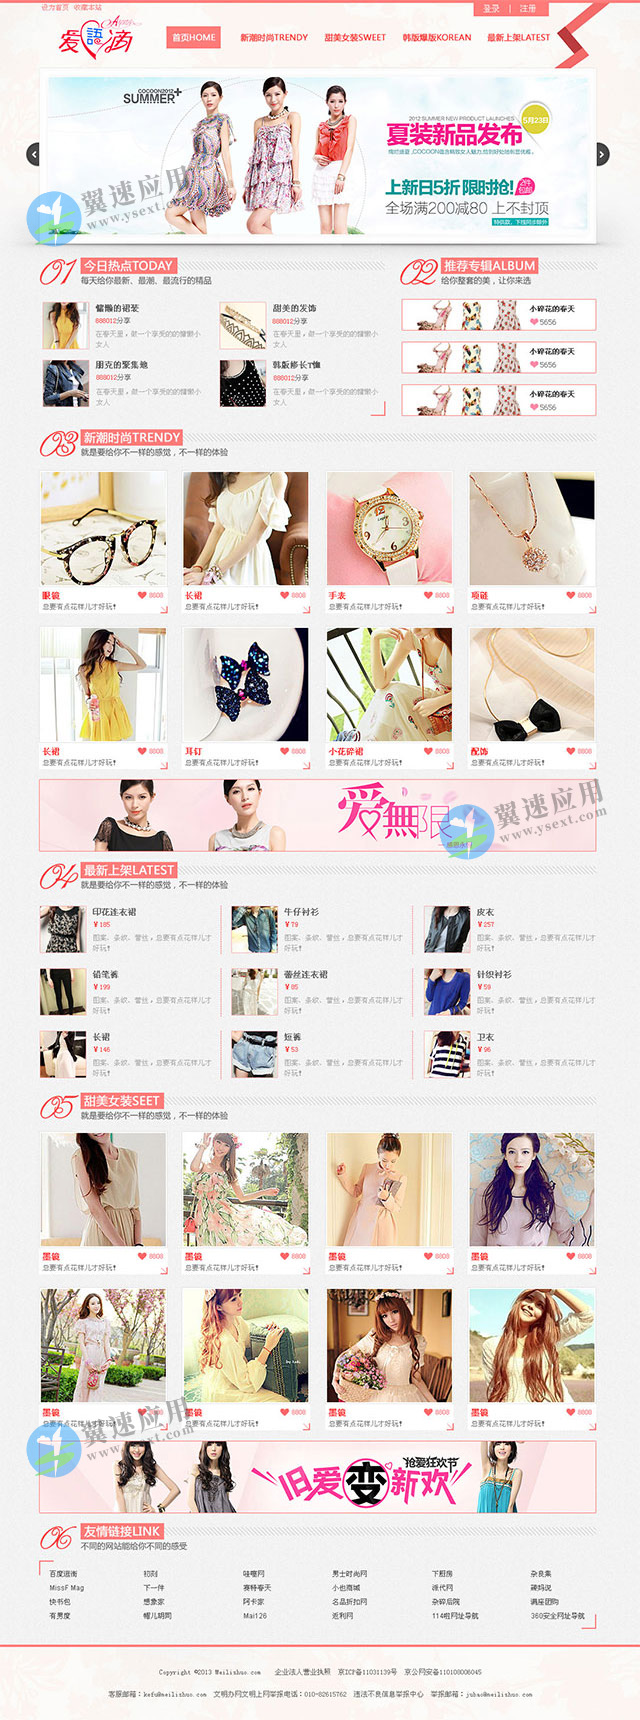 粉色风格女性时尚网站图片.jpg